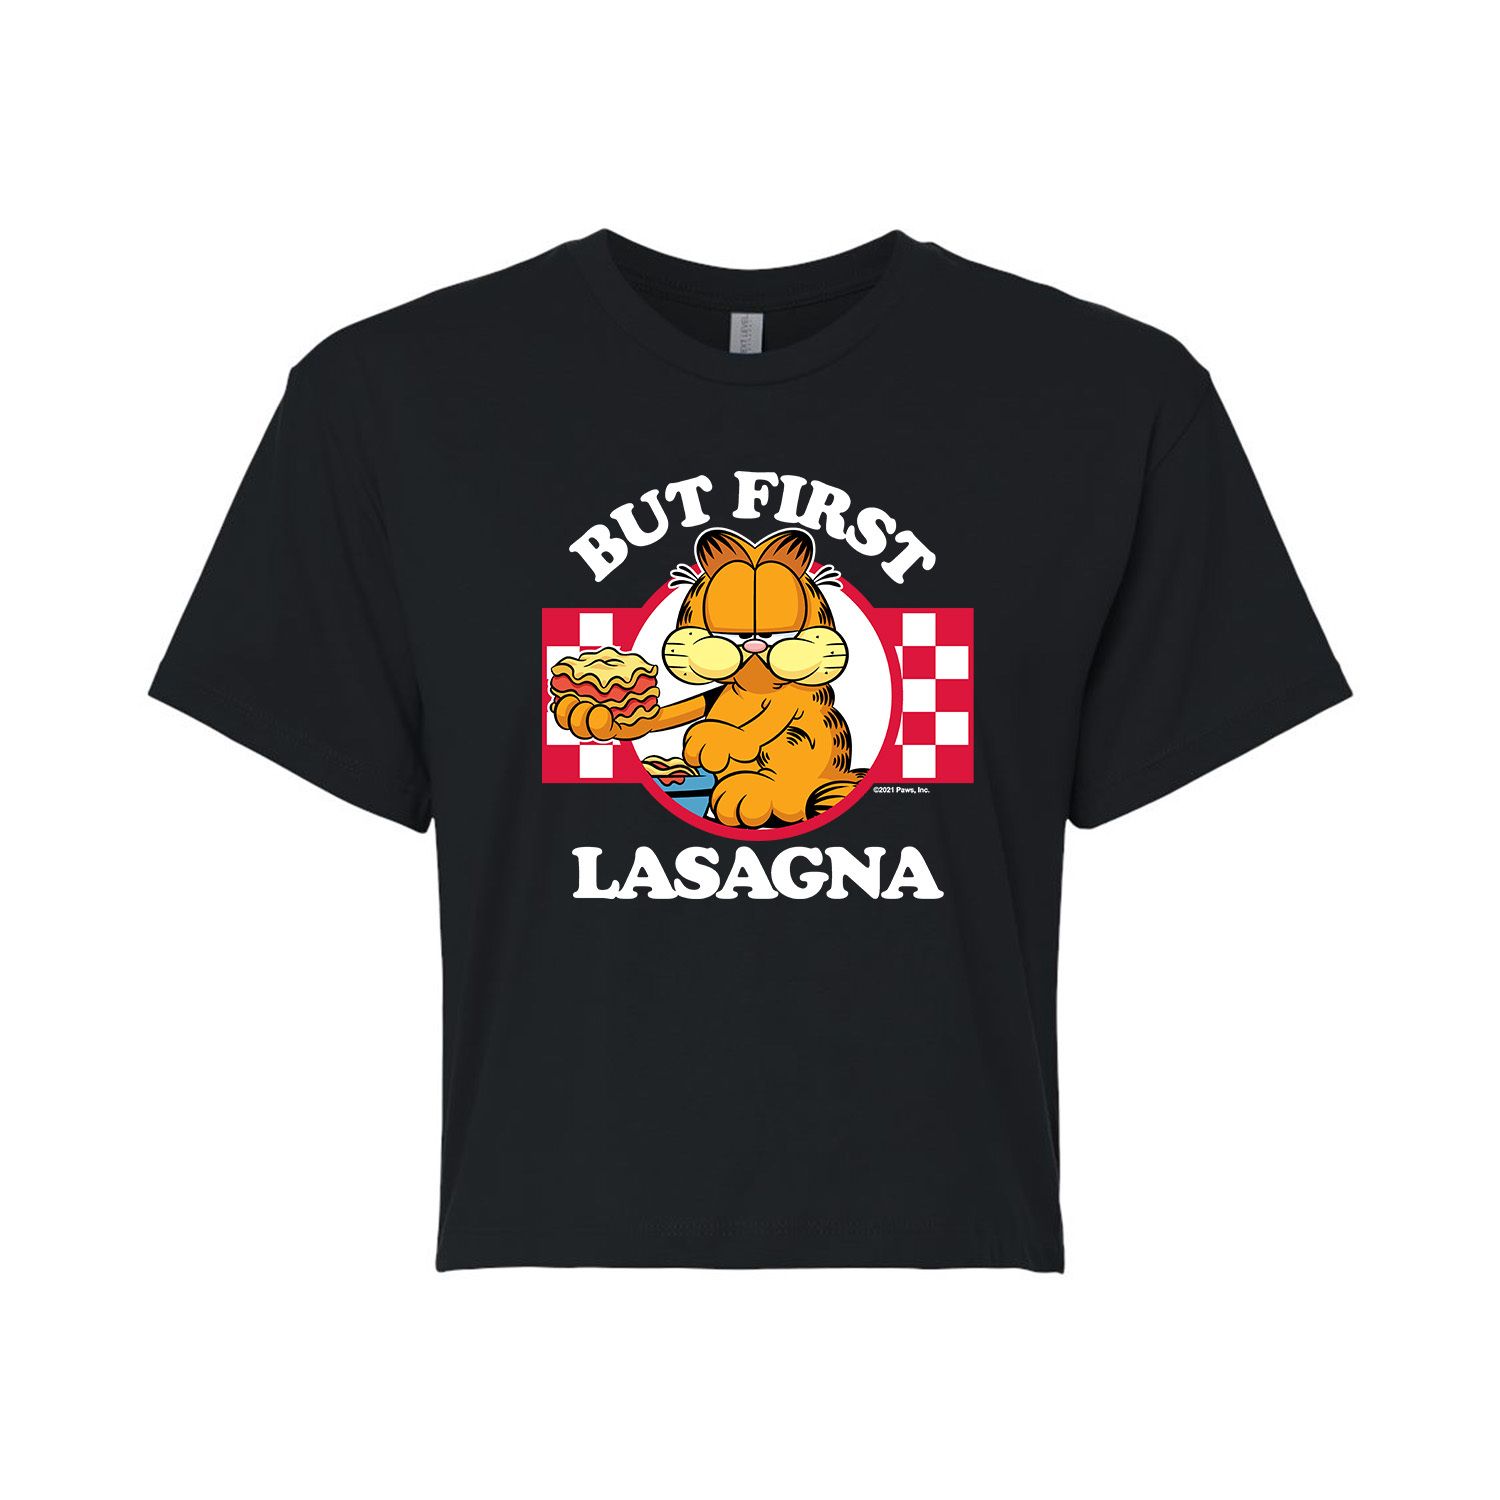 Укороченная футболка Garfield Lasagna для юниоров Licensed Character garfield lasagna party ps4 русские субтитры